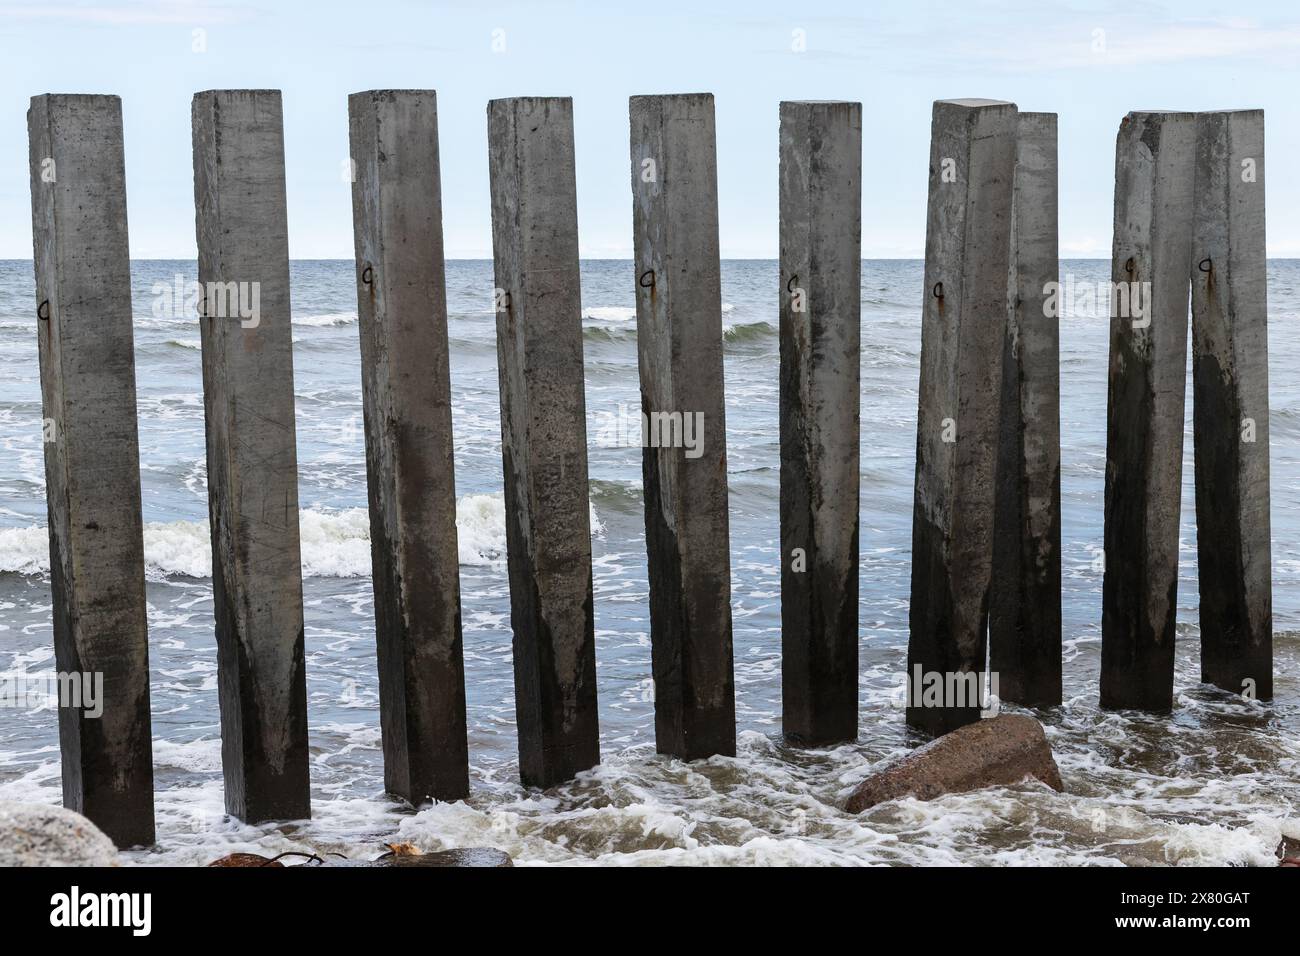 Pilastri di cemento scuro come parte della struttura frangiflutti si trovano sulla costa del Mar Baltico. Svetlogorsk, Oblast' di Kaliningrad, Russia Foto Stock